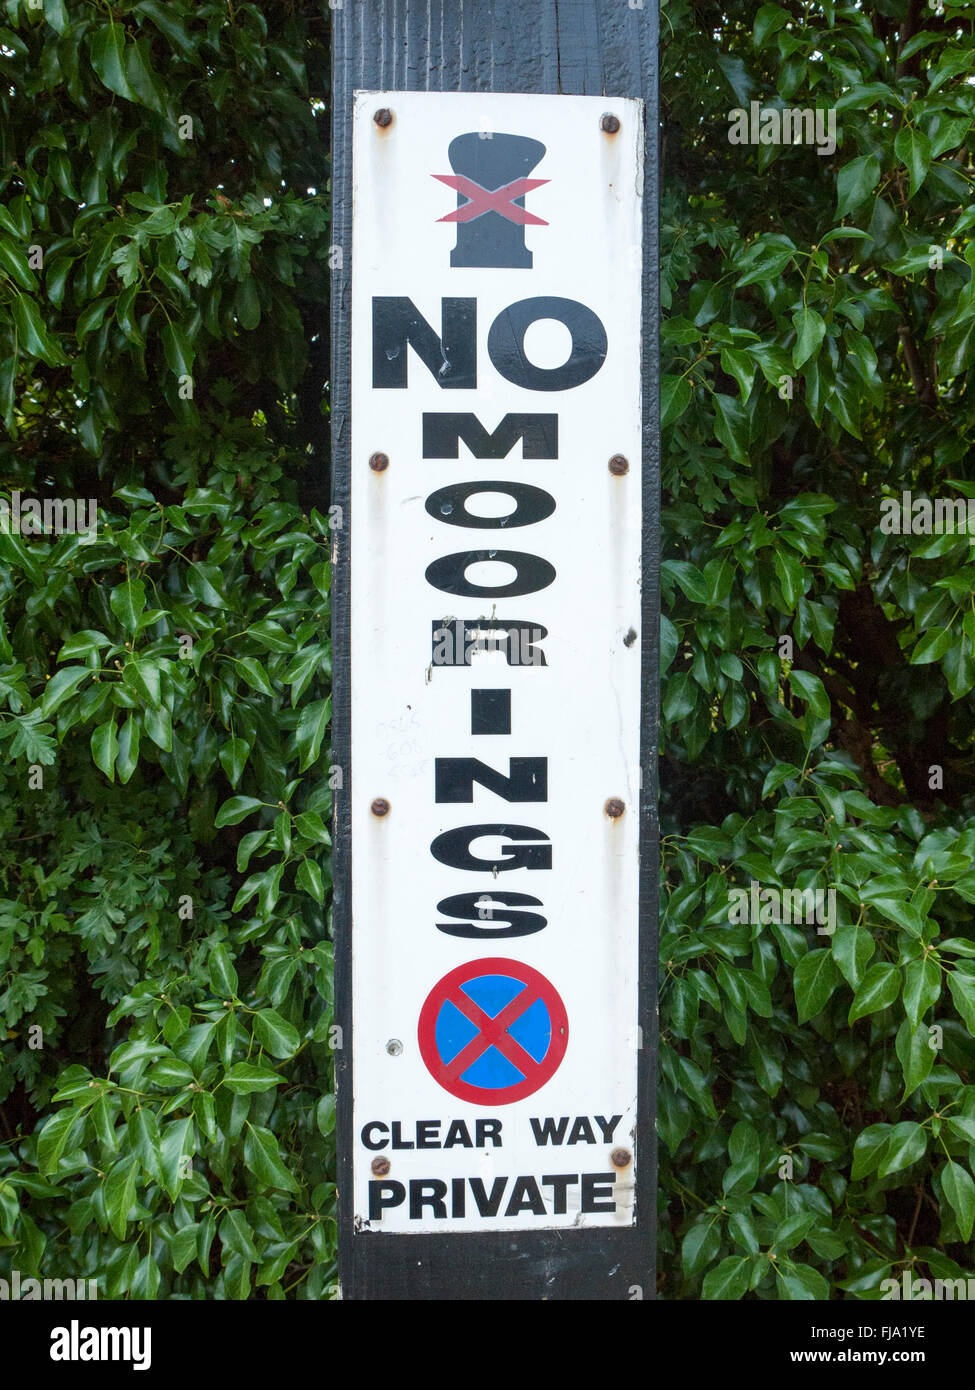 No moorings warning sign Stock Photo